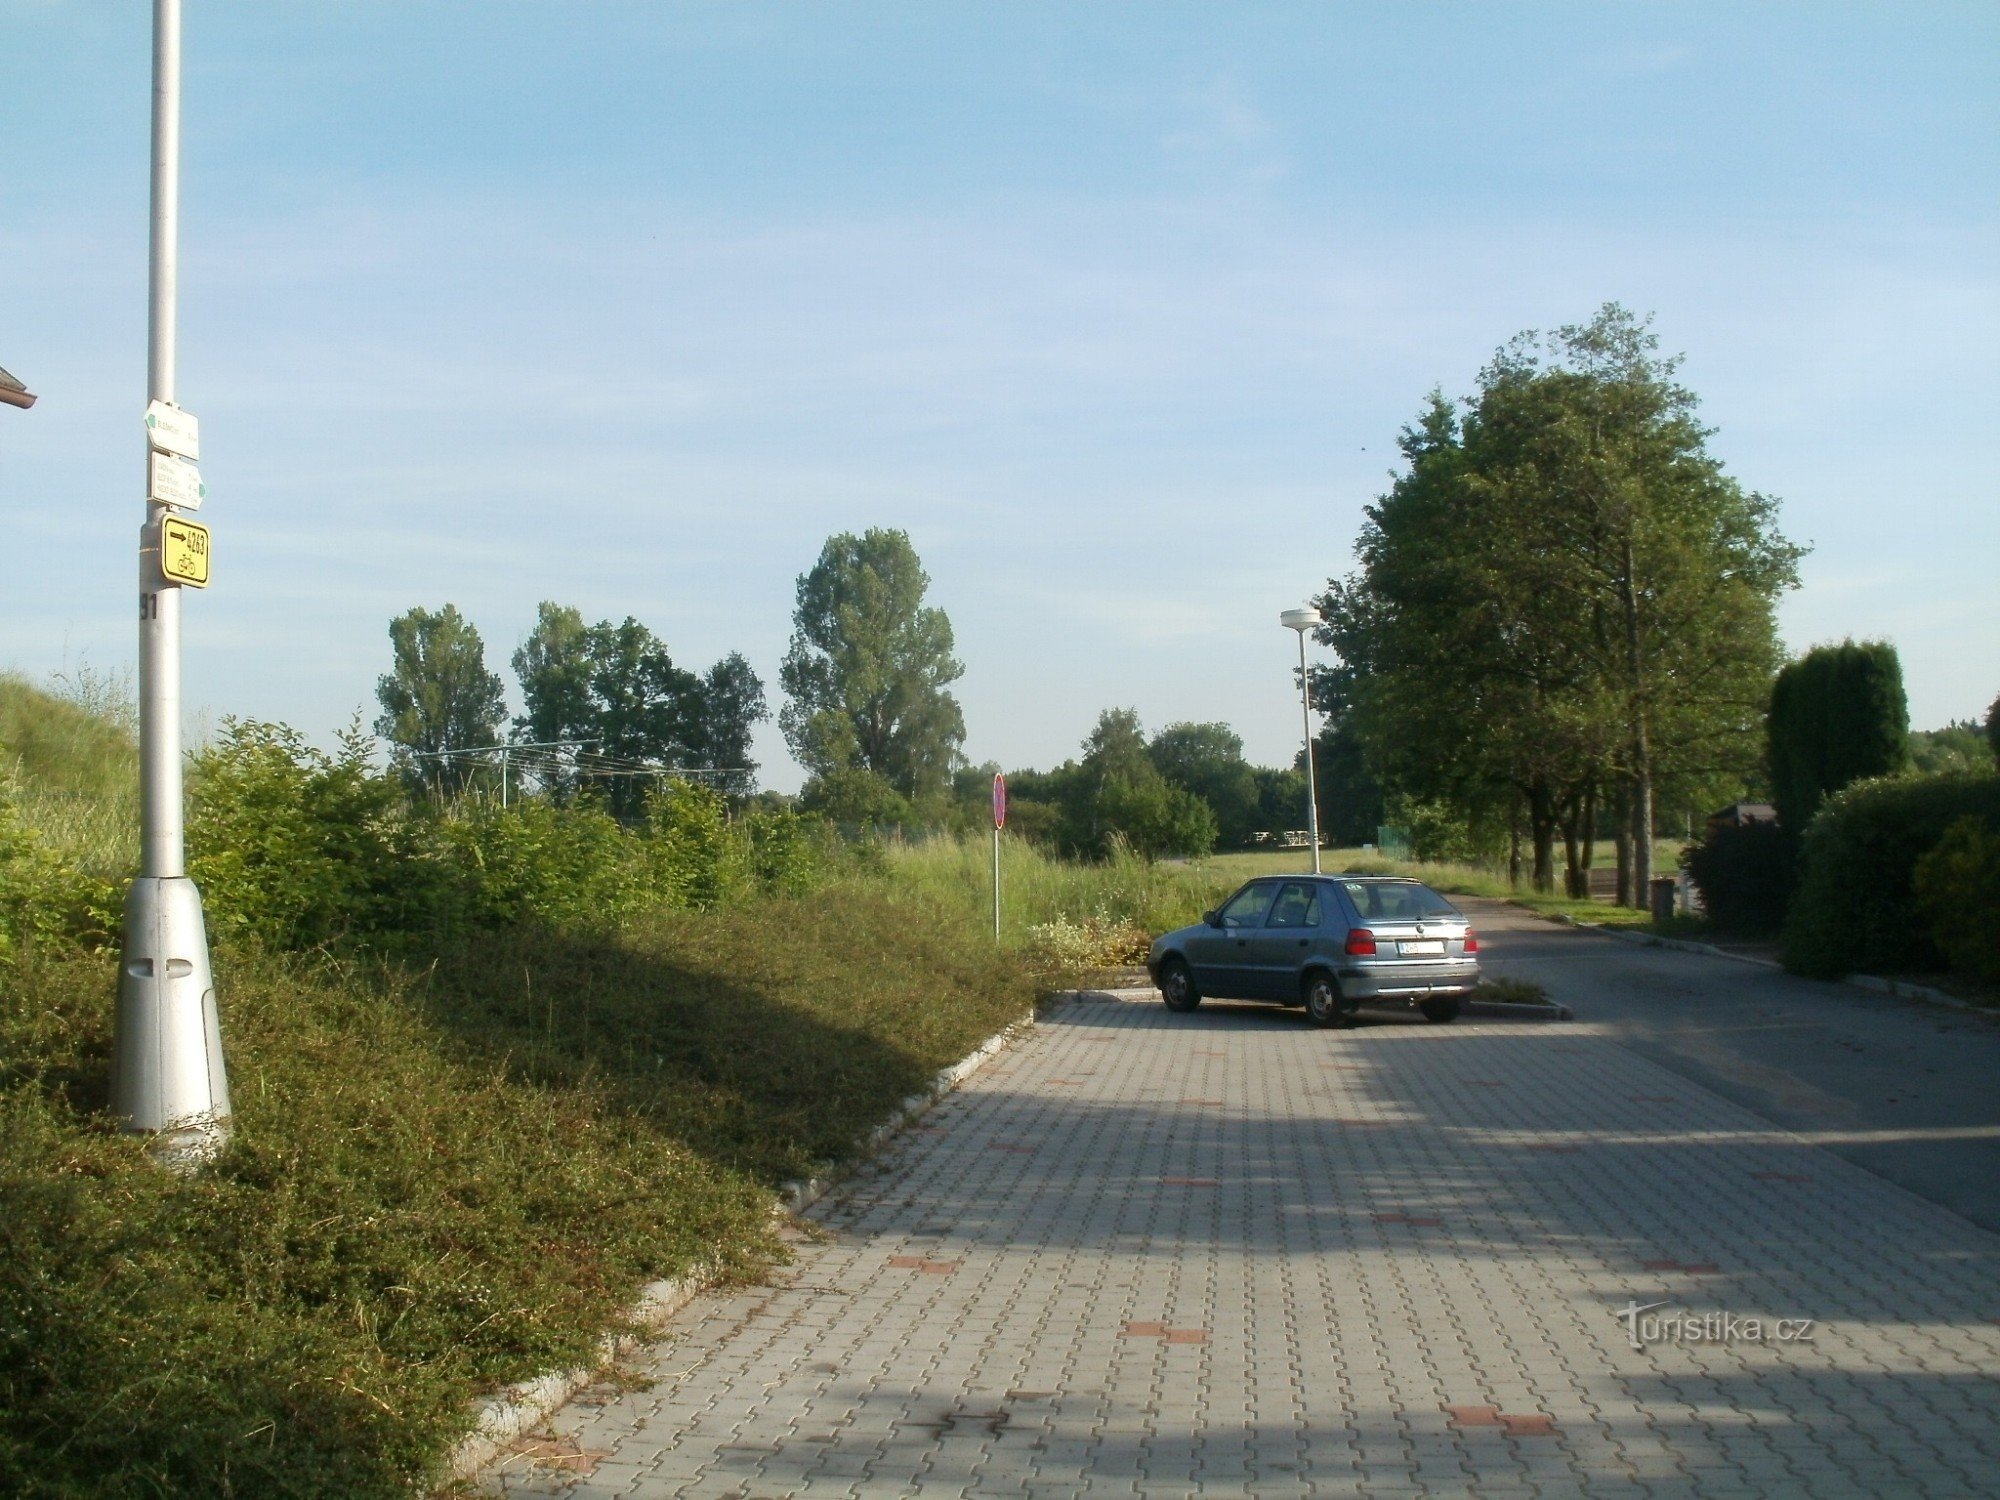 touristische Kreuzung Blešno - in der Nähe des Spielplatzes